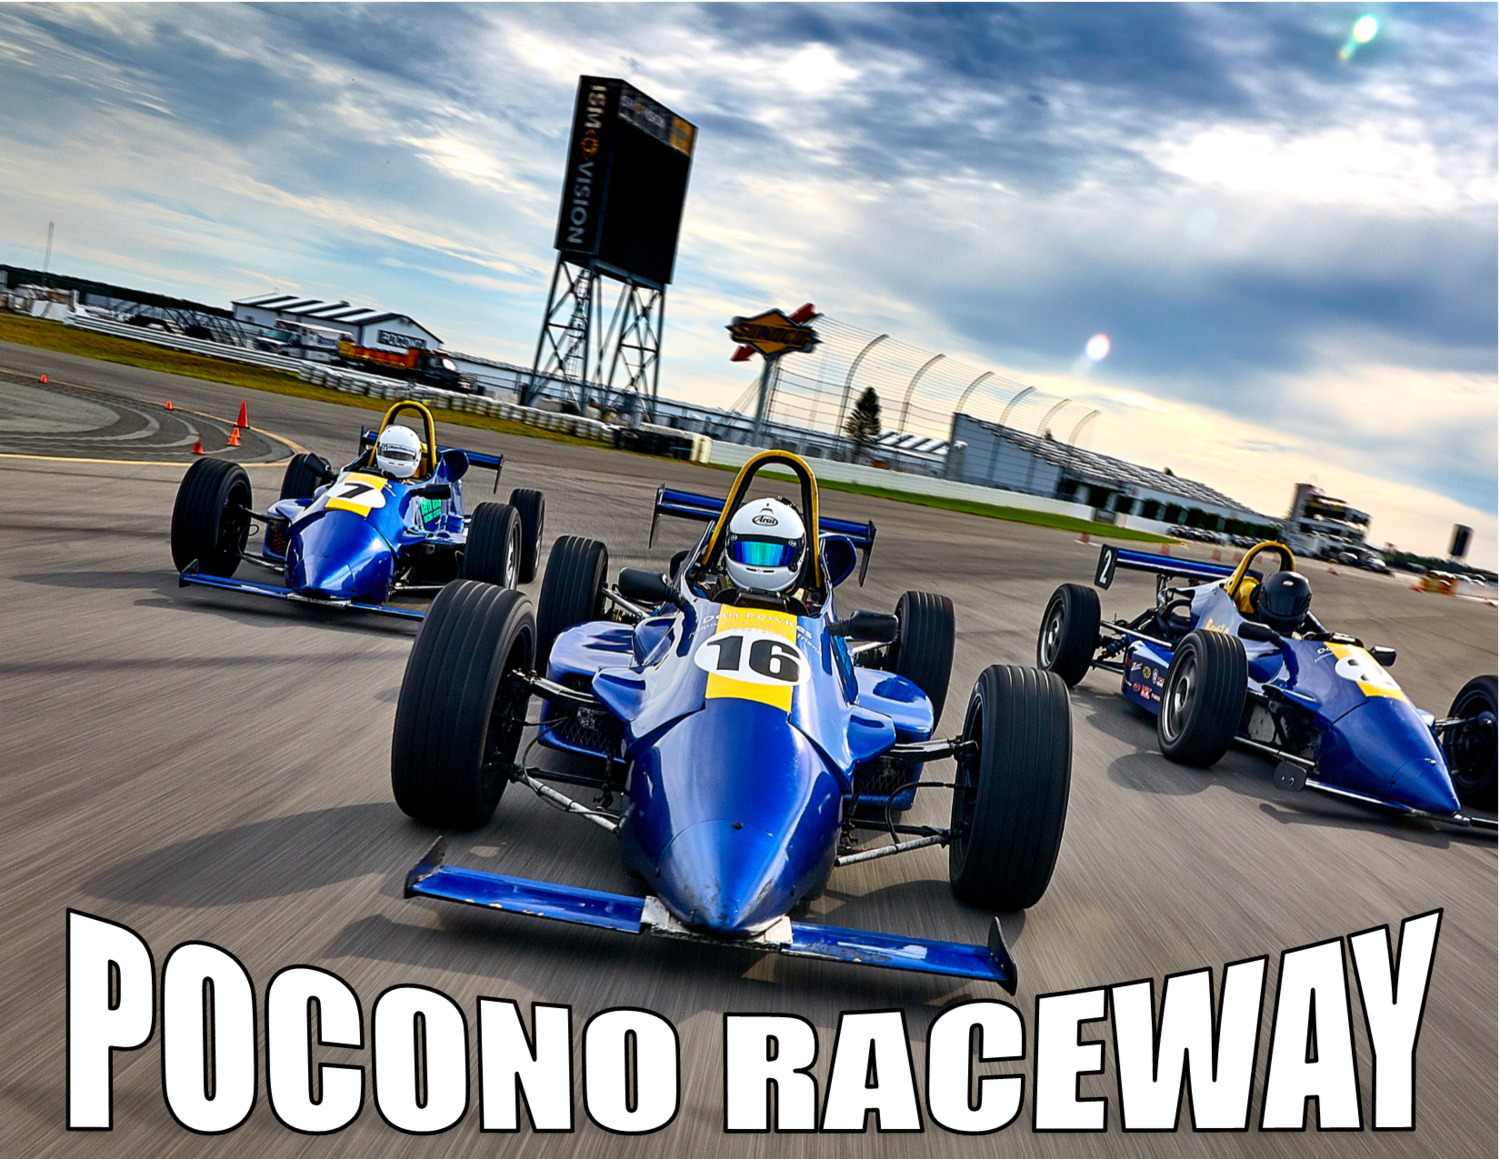 Pocono Raceway- 5 Day Road Racing School